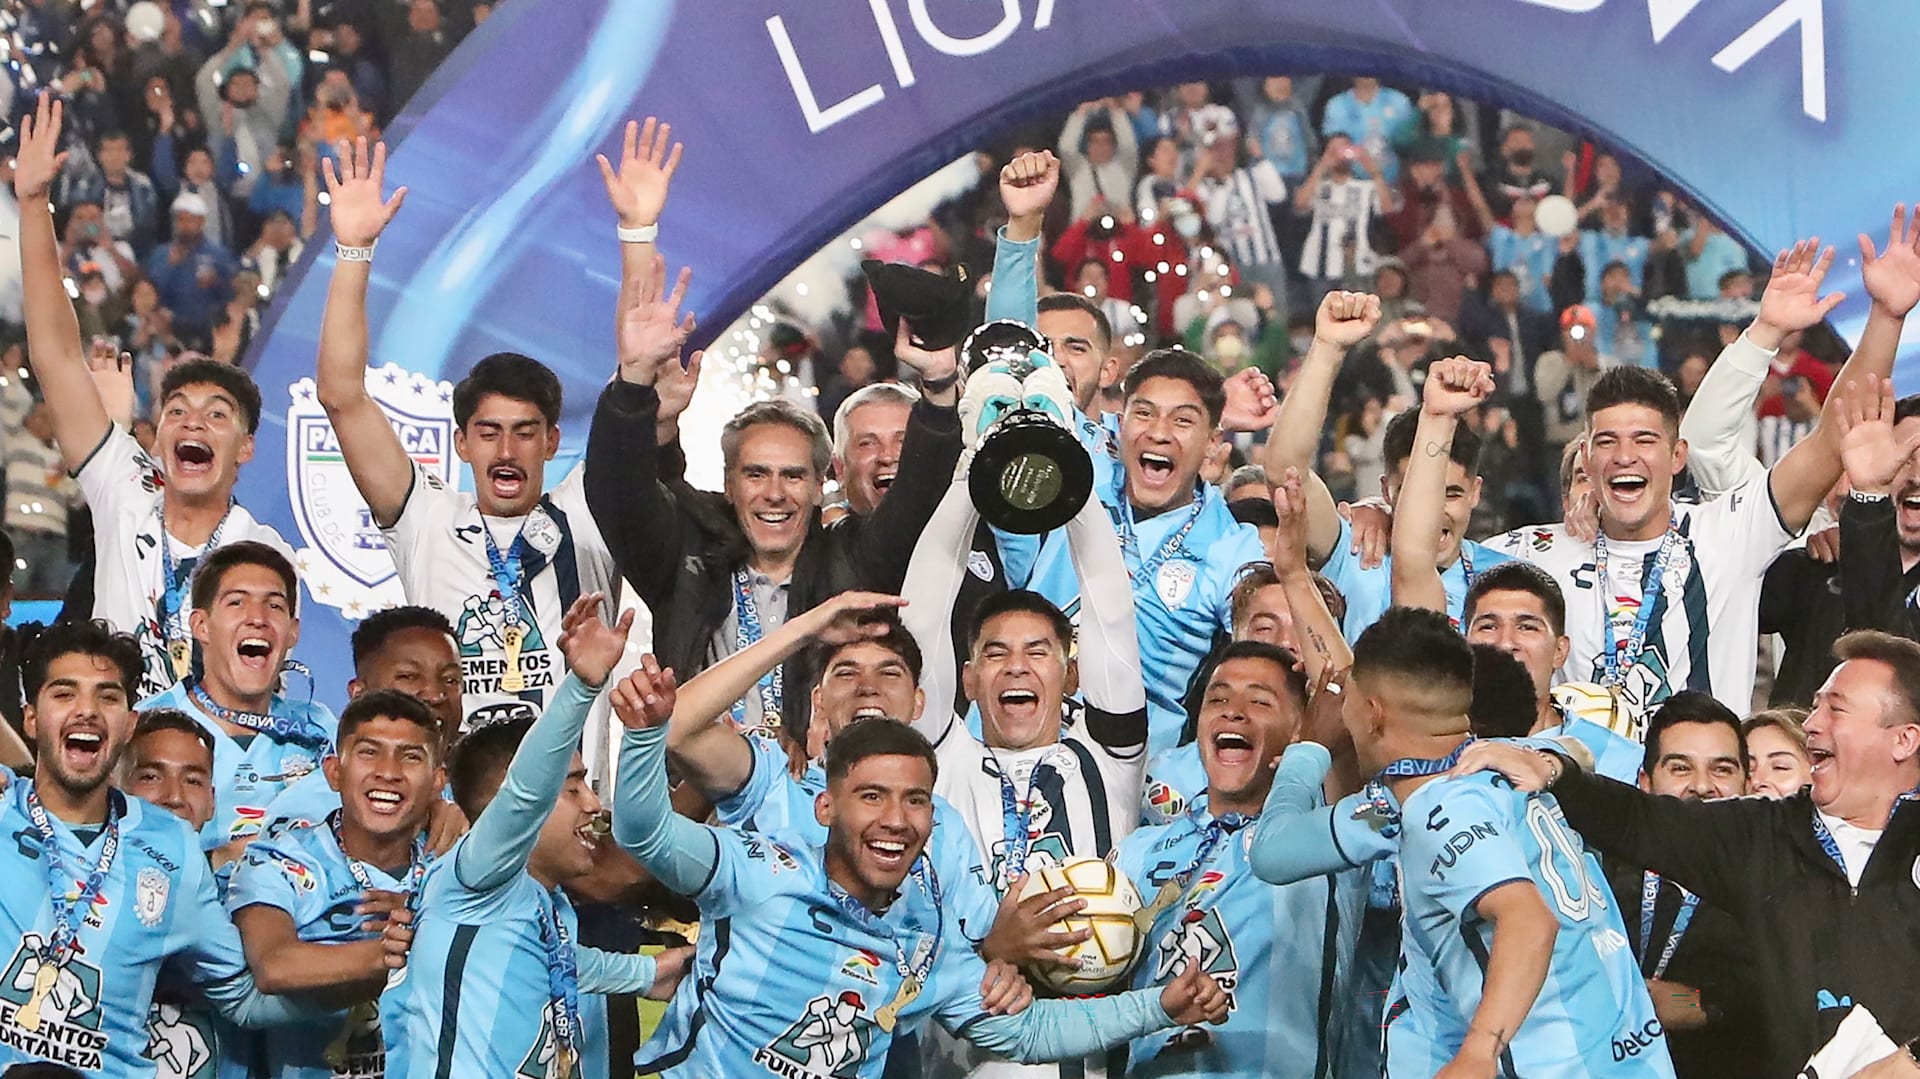 Liga MX: Pachuca el club más ganador de los últimos 20 años en México